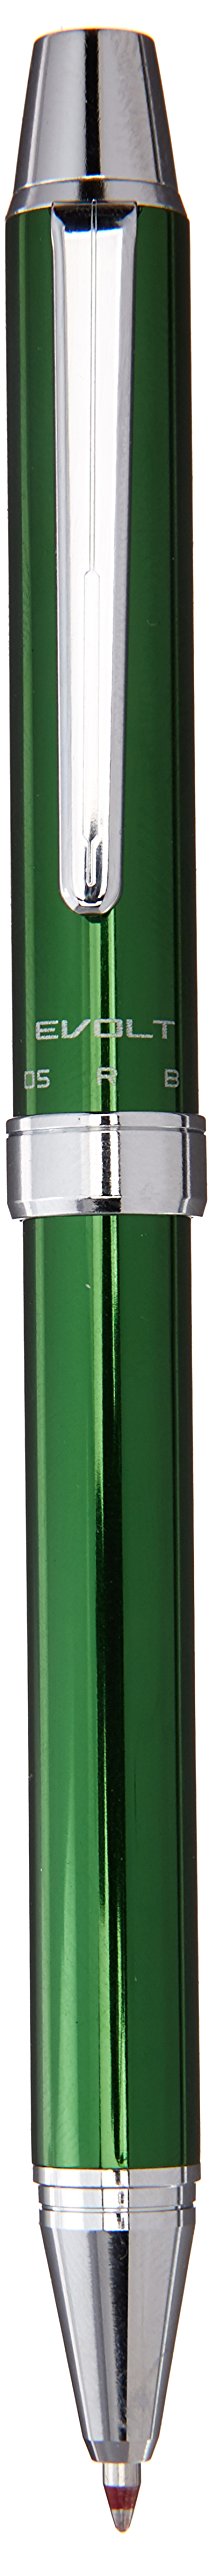 Pilot BTHE-1SR-G Evolt 2 Color Ballpoint Multi Function Pen & Mechanical Pencil_1